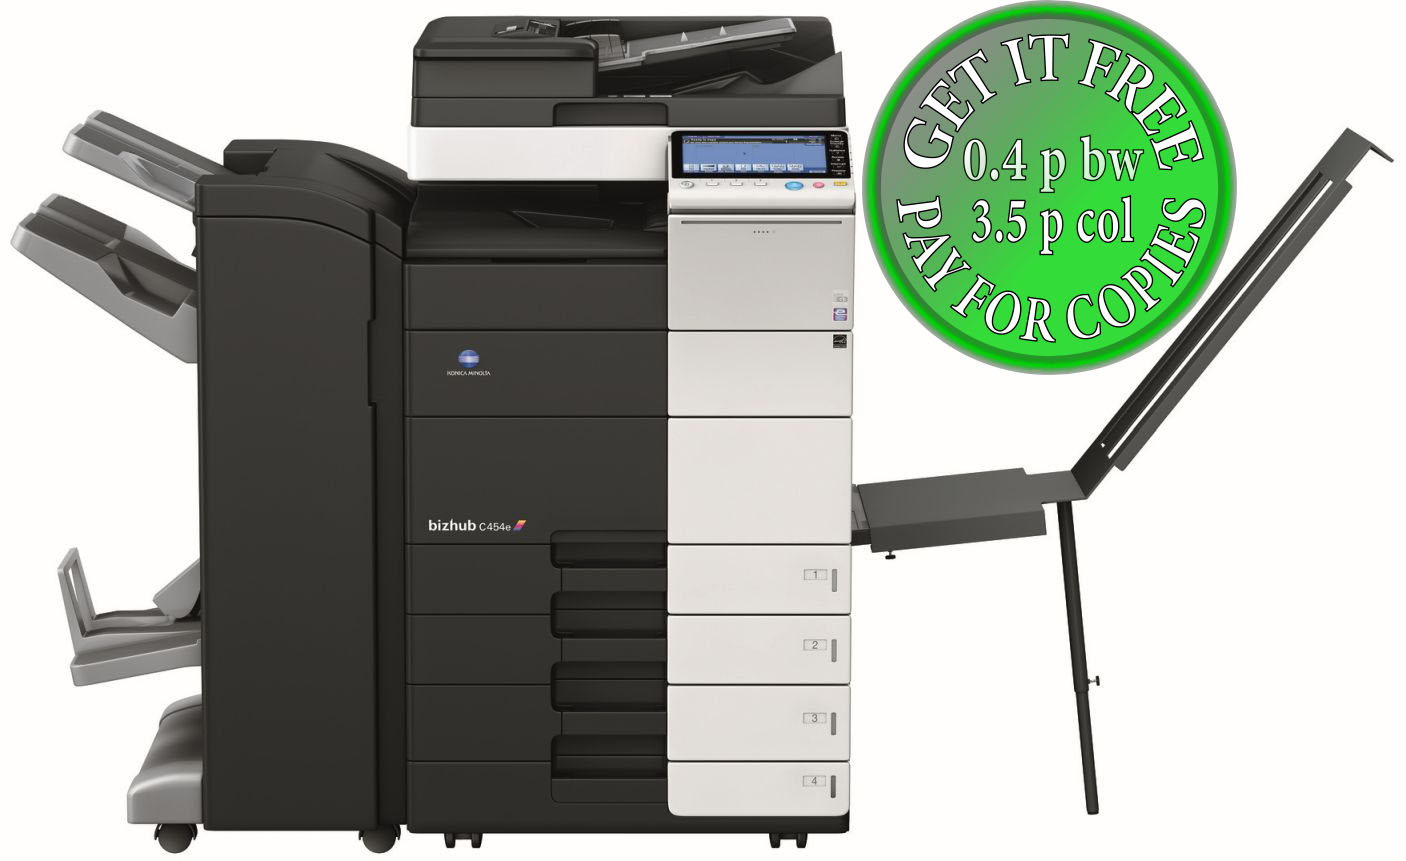 Bizhub C454E / Konica Minolta Bizhub C454e Kopierer Drucker Scanner Fax